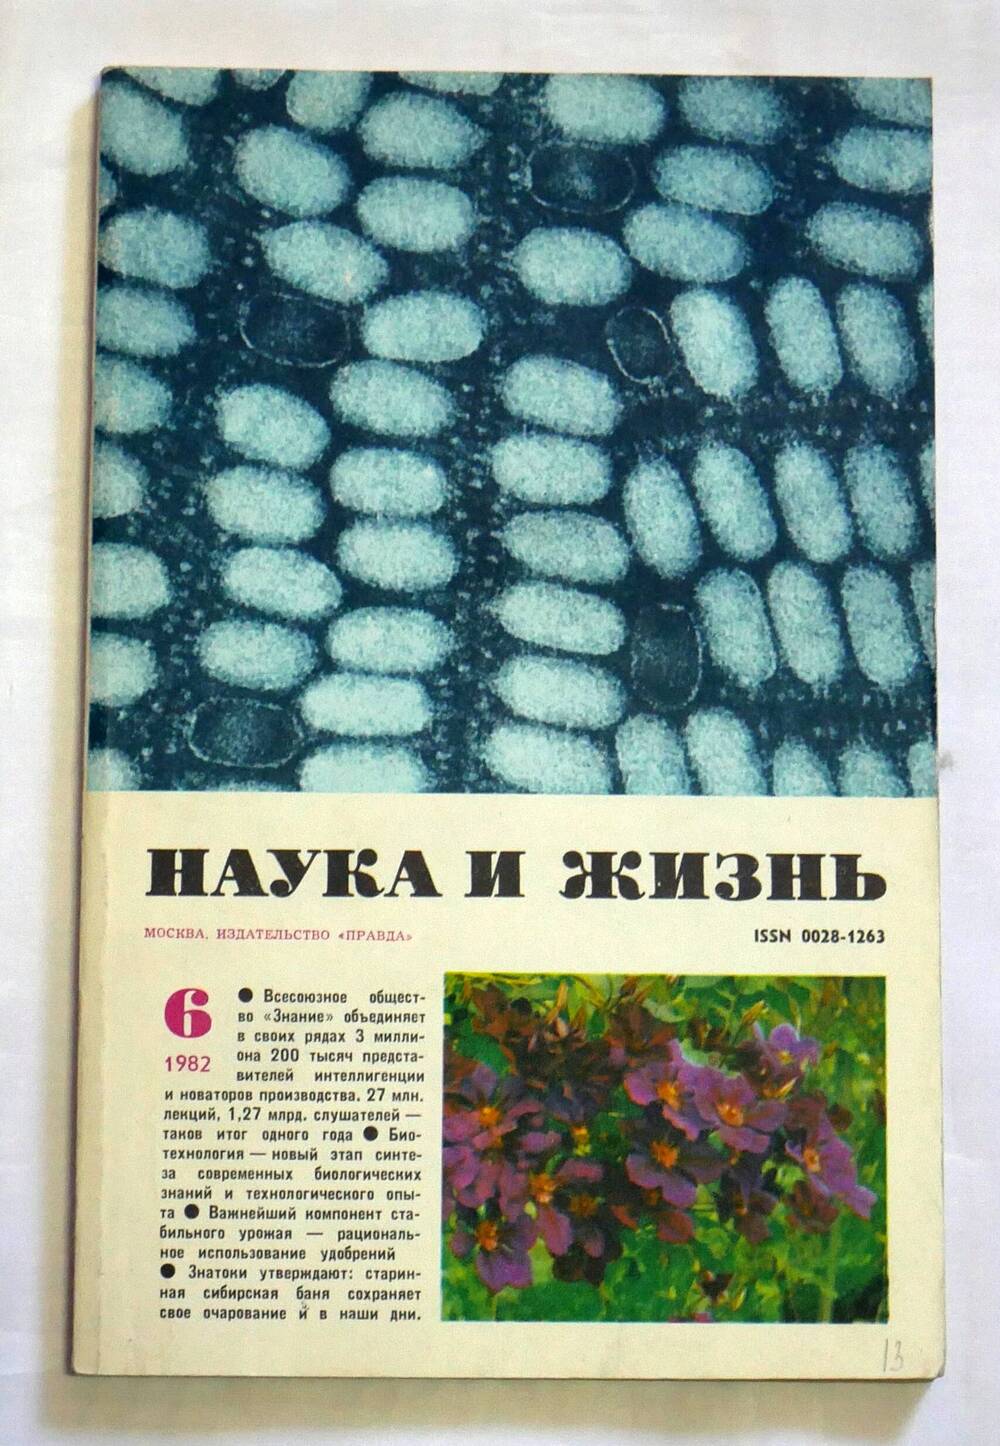 Журнал. Наука и жизнь. № 6 июнь 1982 г.